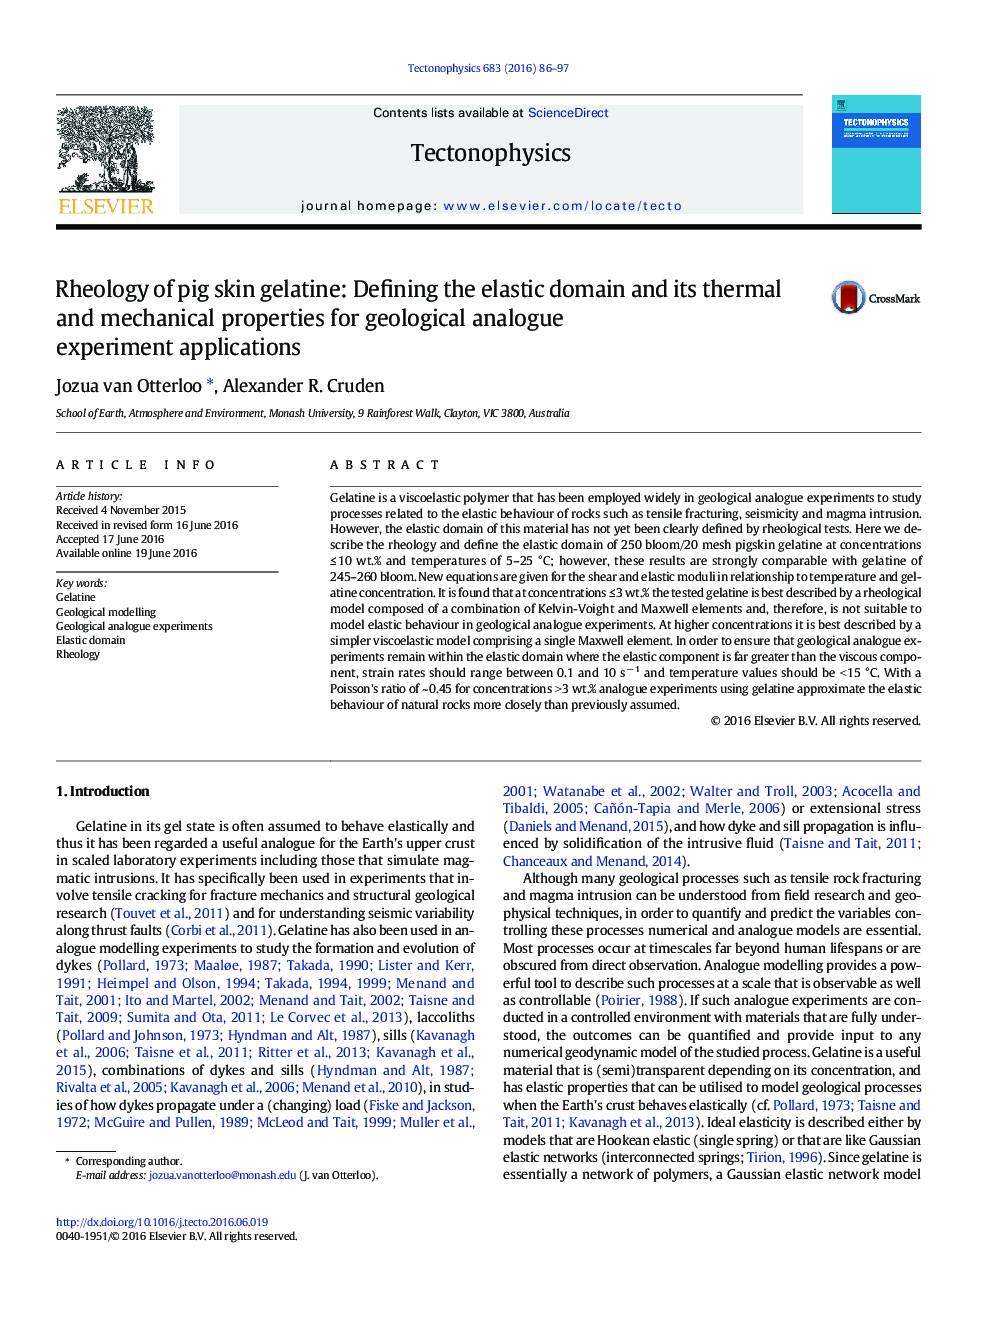 رئولاسیون ژلاتین پوست خوک: تعریف دامنه کششی و خواص حرارتی و مکانیکی آن برای کاربردهای آزمایشی آنالوگ زمین شناسی 